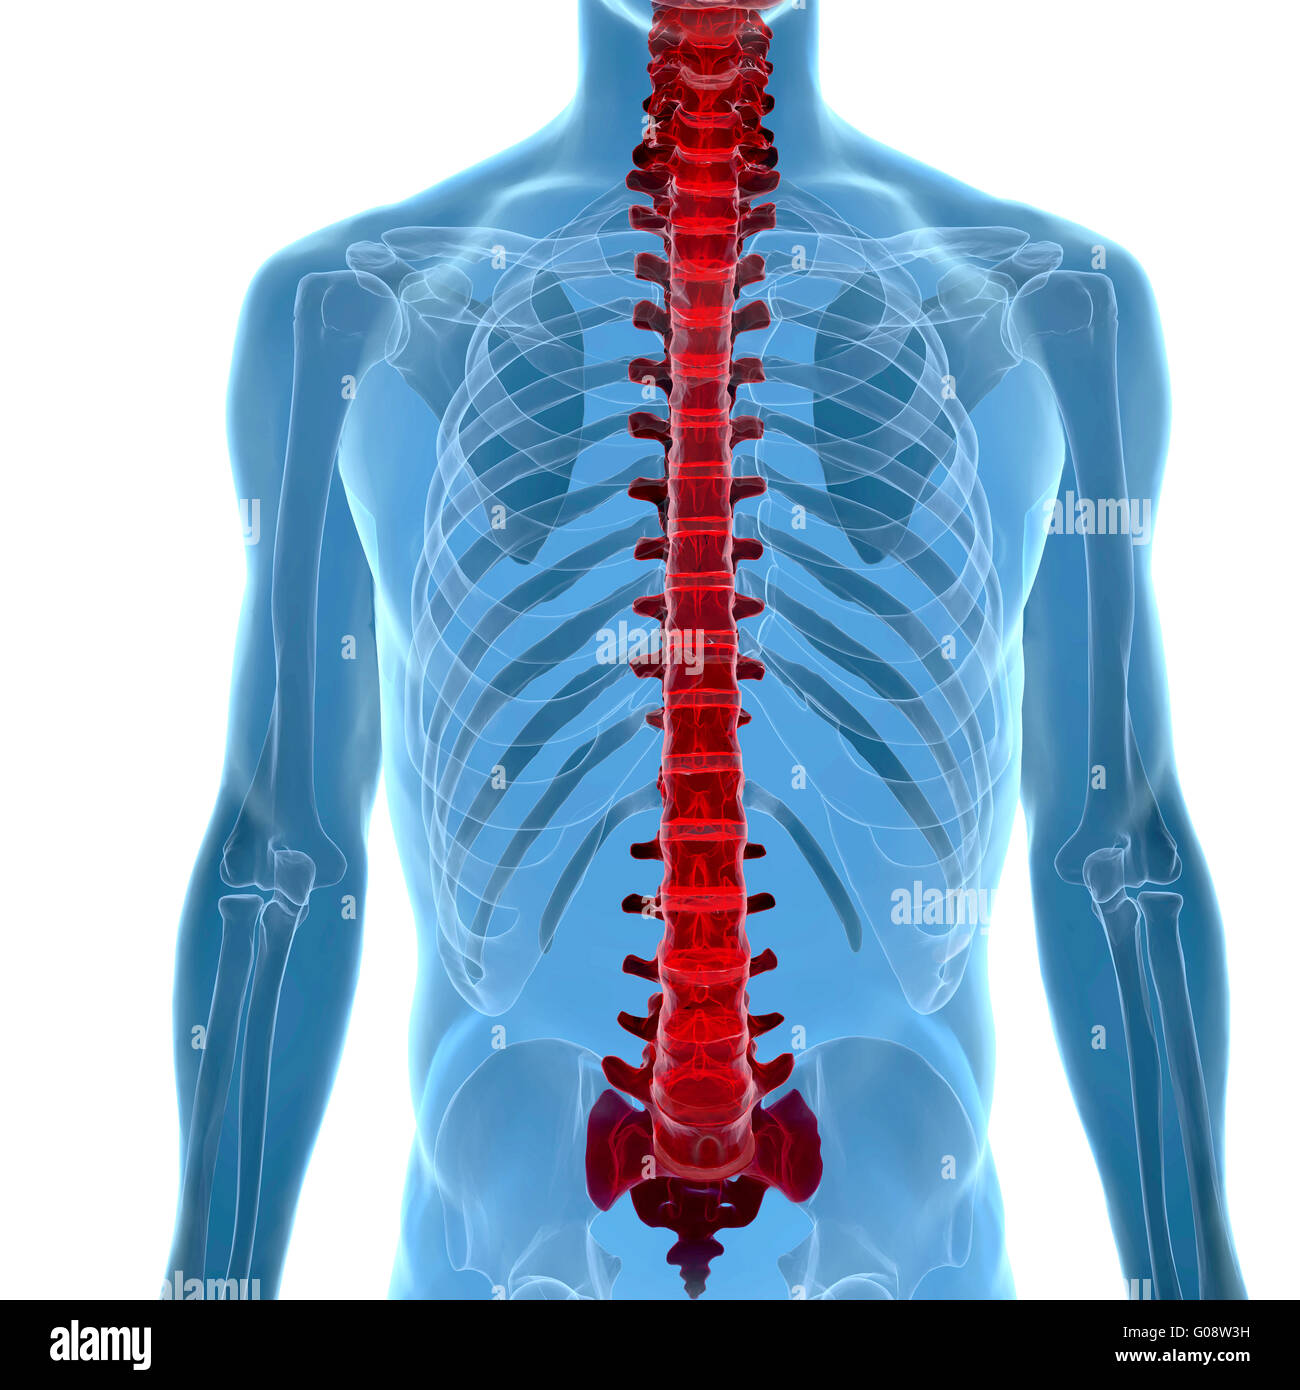 Anatomie de la colonne vertébrale dans la vue x-ray Banque D'Images